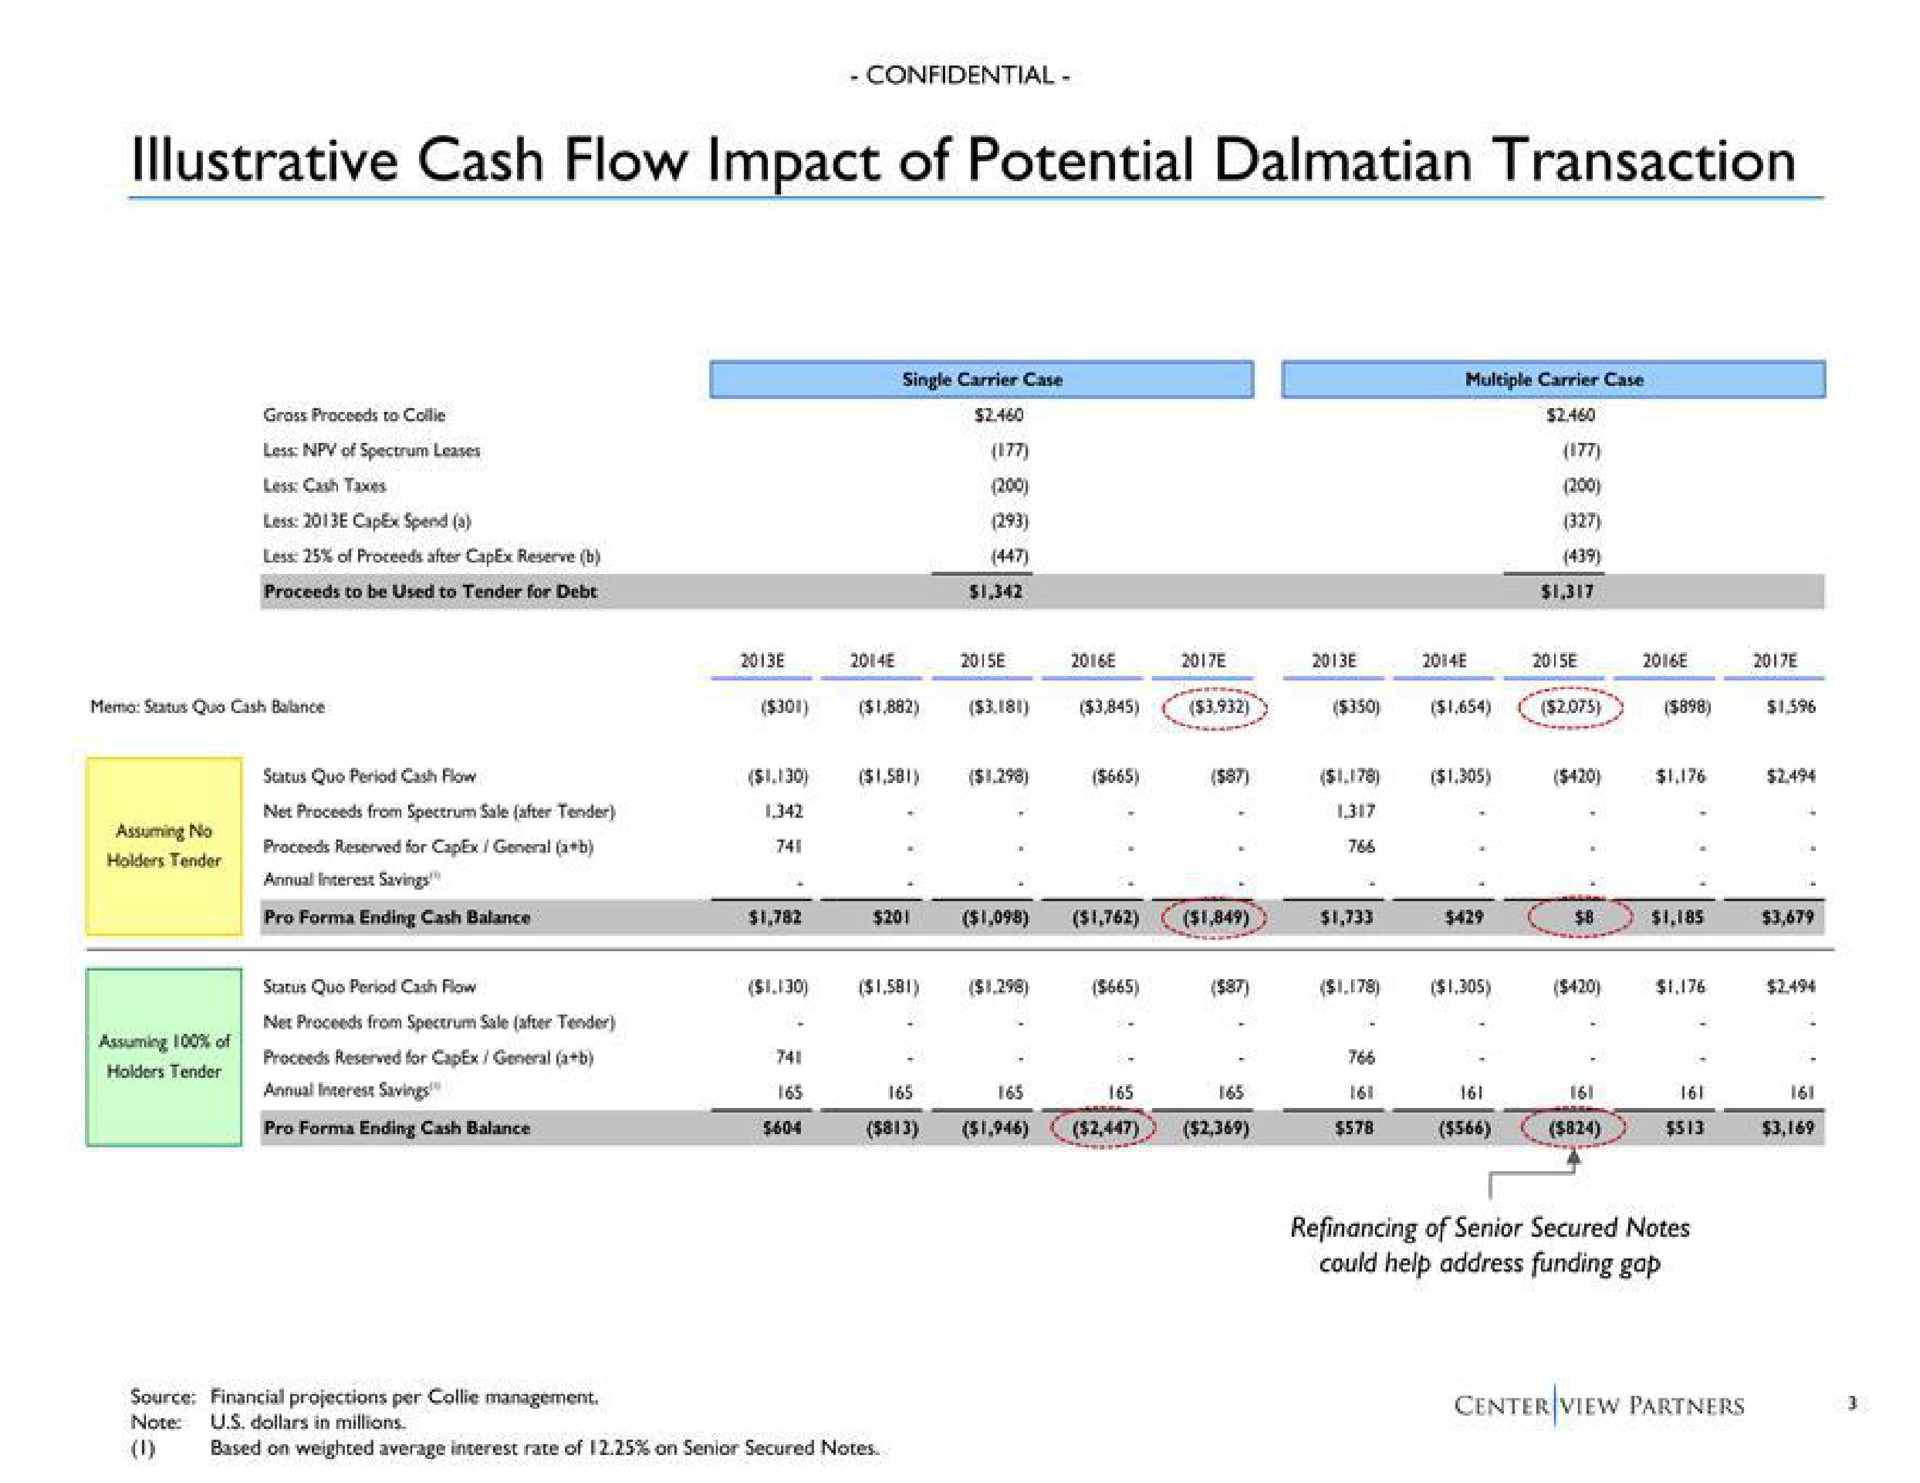 illustrative cash flow impact of potential transaction | Centerview Partners